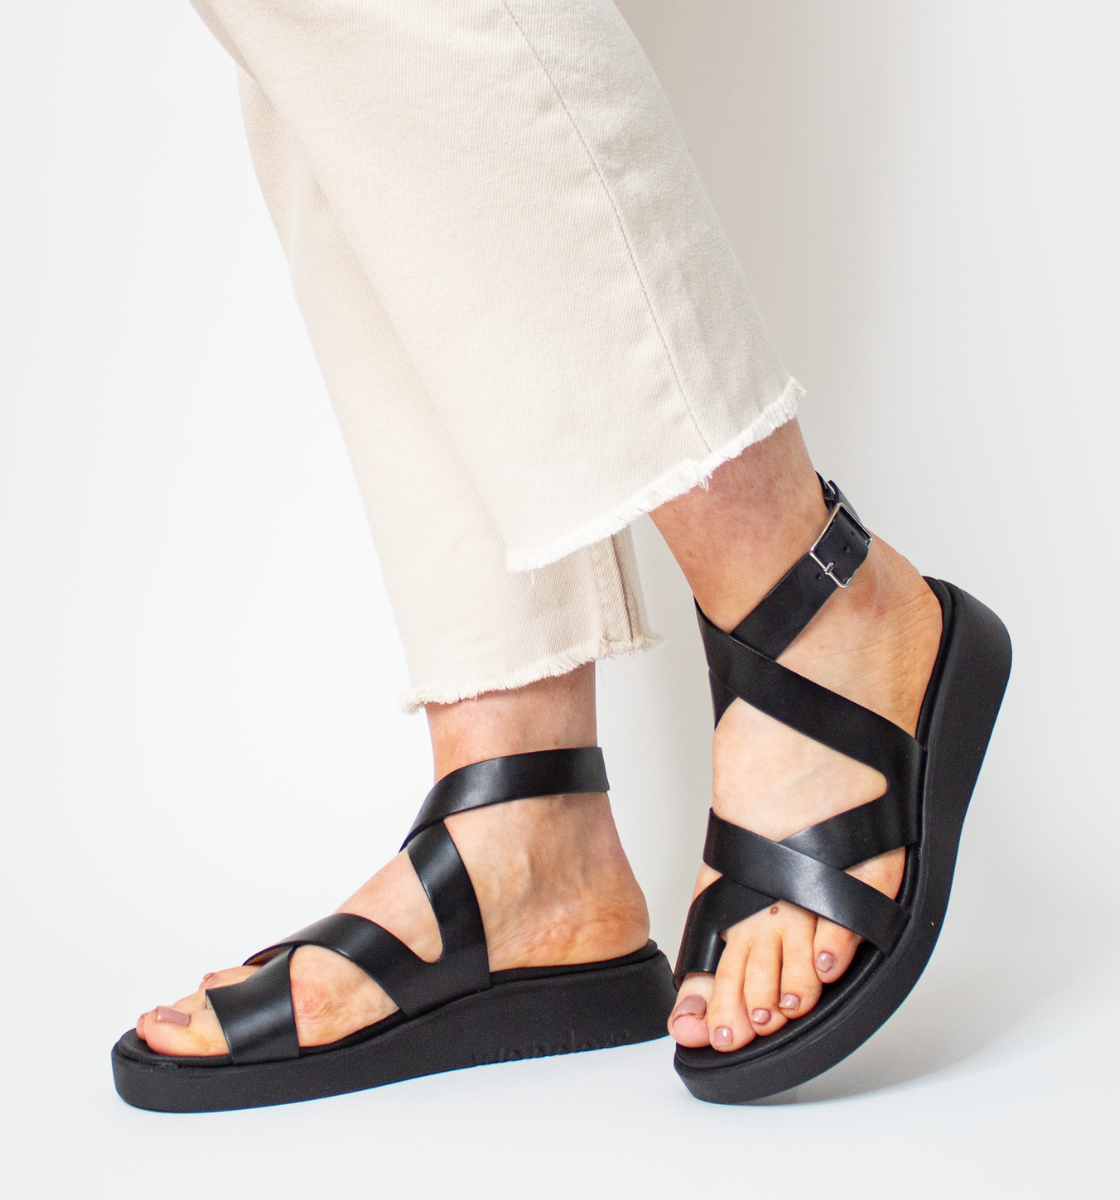 Comfortable sandals for Women Online Ireland